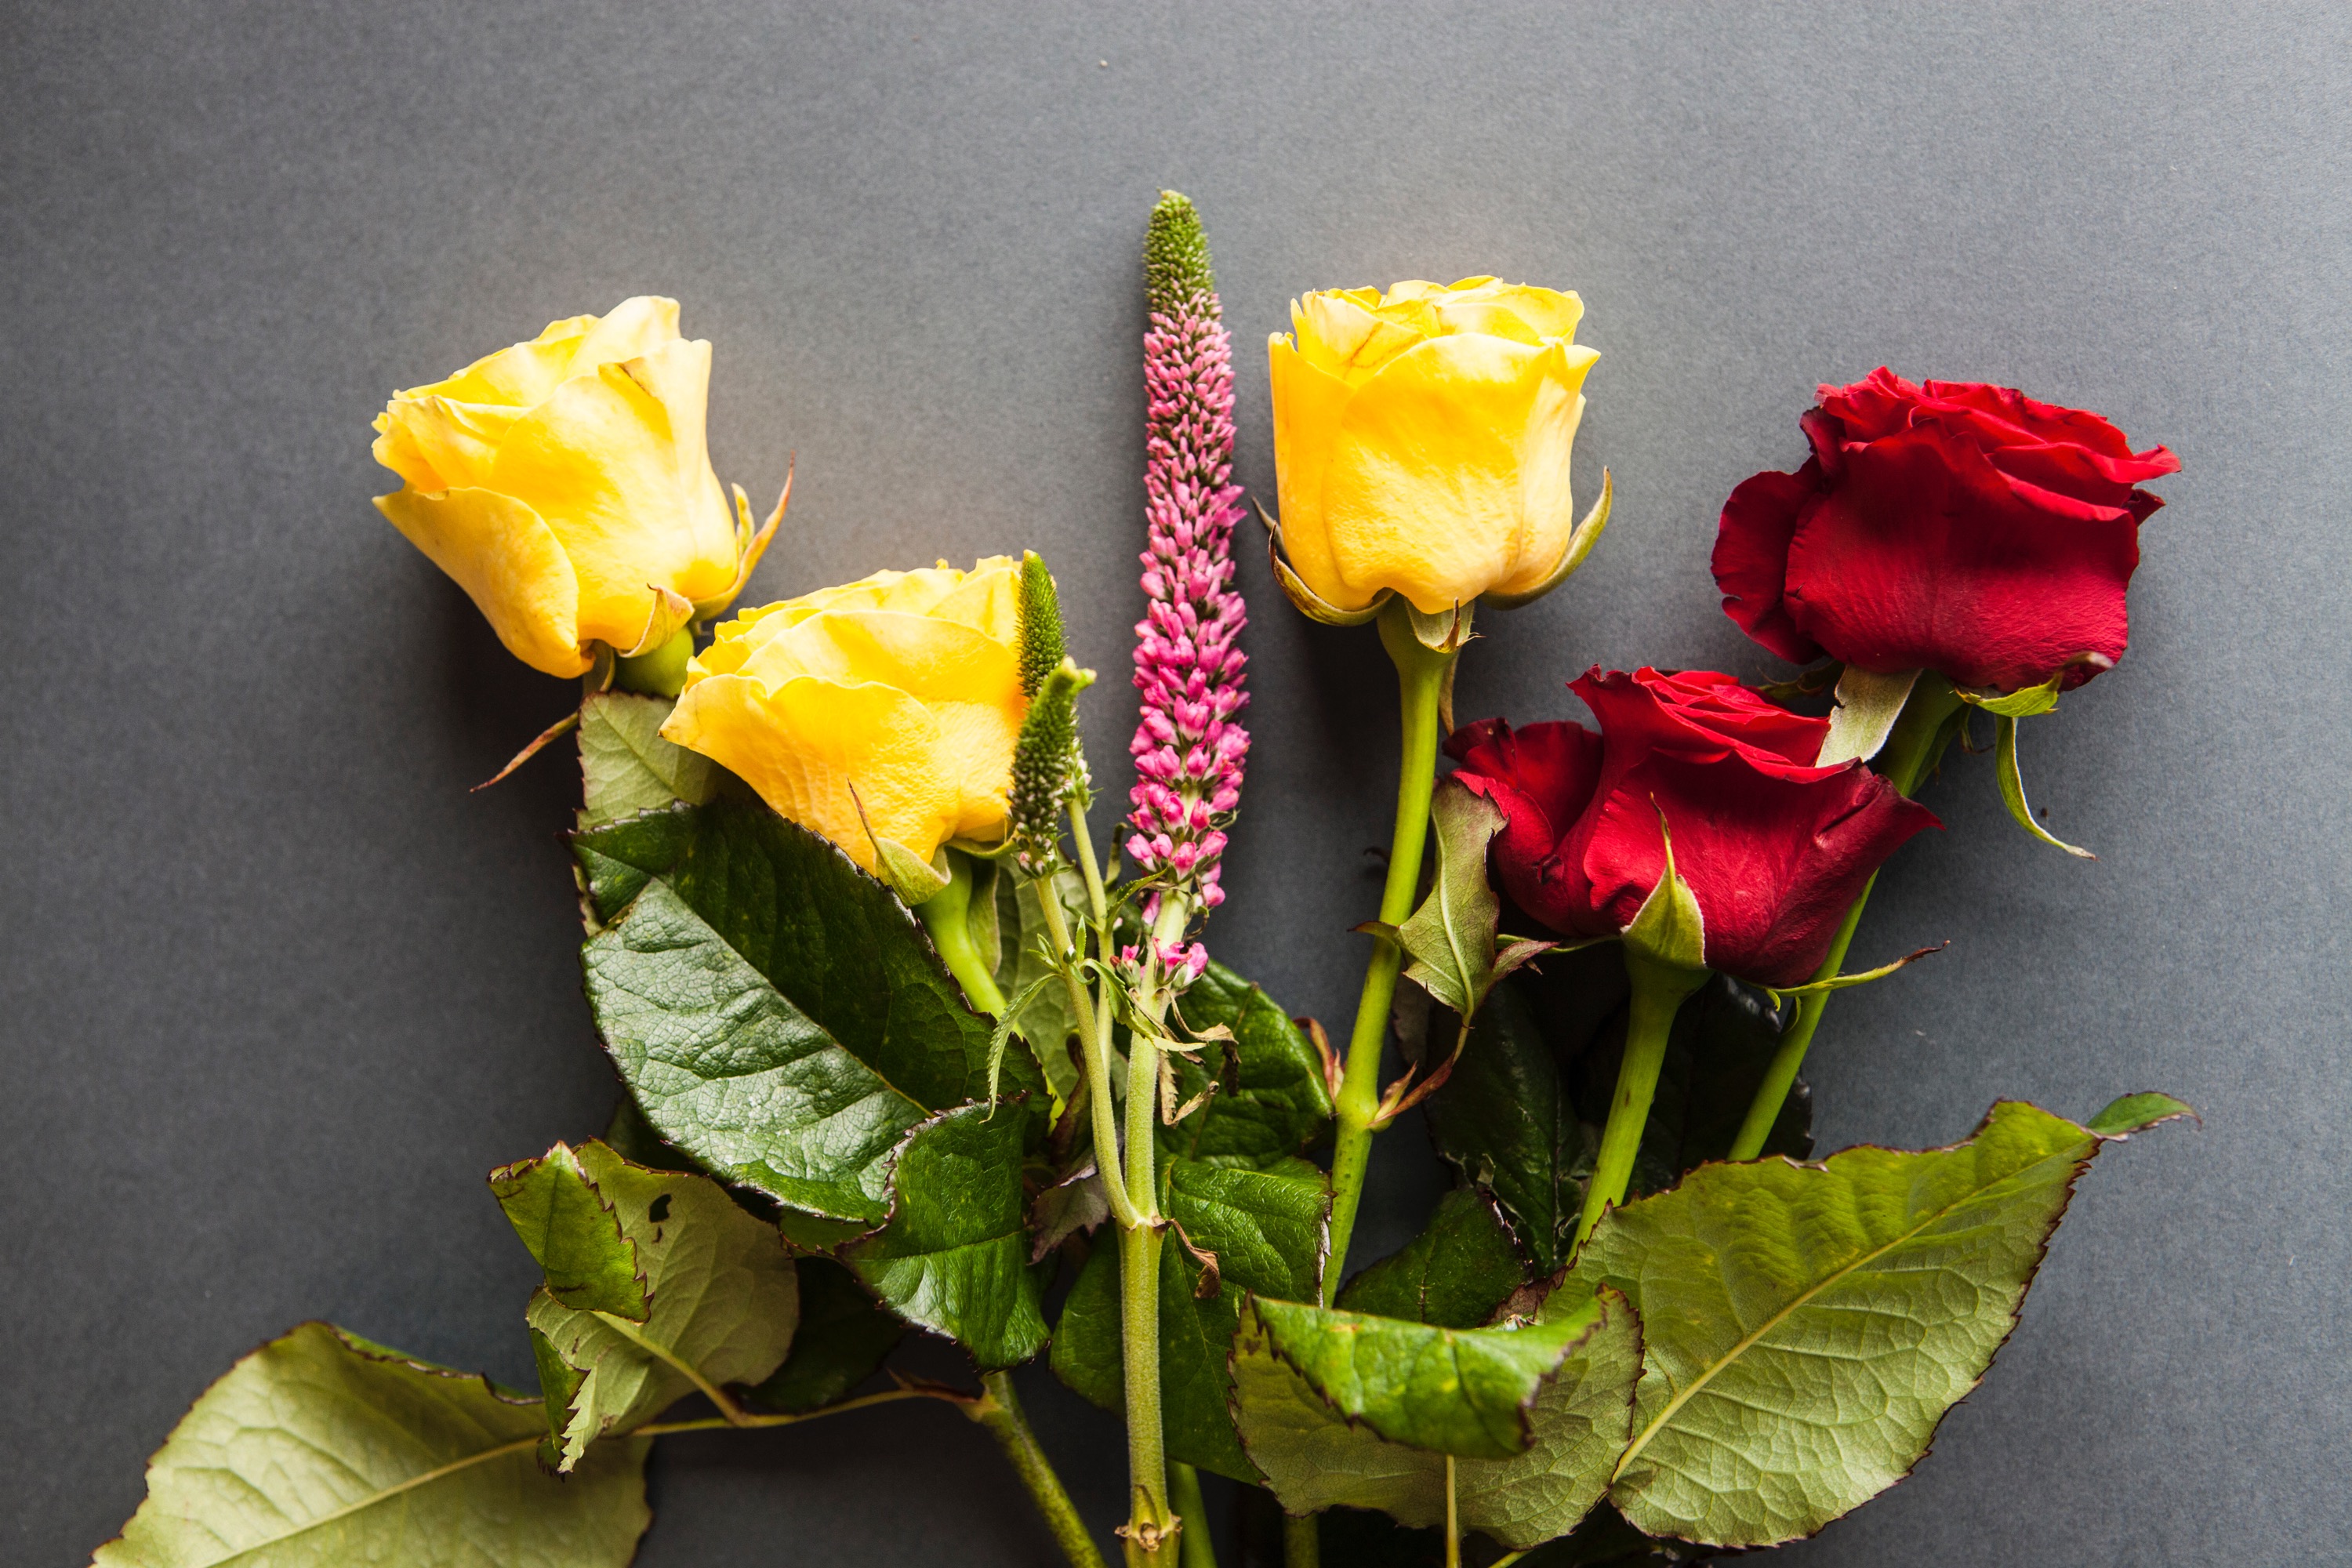 レカンフラワー花別乾燥方法 ８つの技法 方法 ブーケ 花束保存 レカンフラワー専門 名古屋 教室 販売 お花を保存しプレゼントに最適